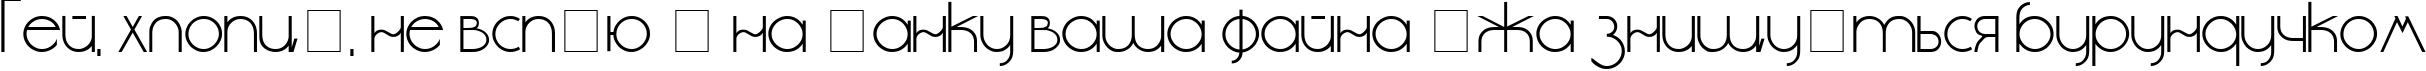 Пример написания шрифтом cyr_DS Standart текста на украинском